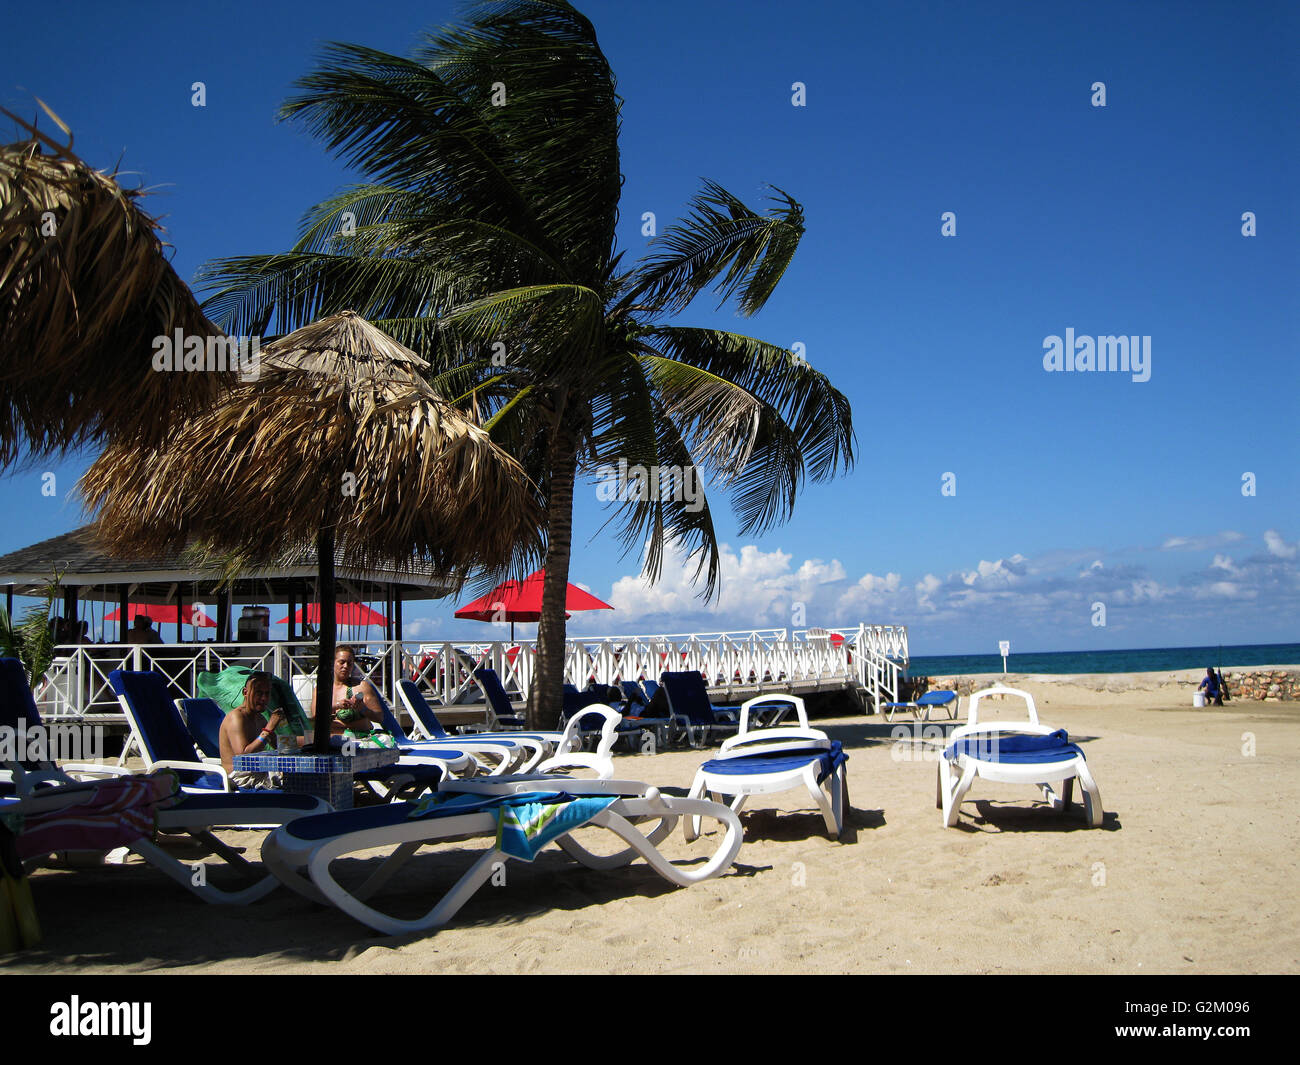 Bel sole caldo lit spiaggia caraibica, sabbia dorata e drammatico, sky Hotel Decameron, Runaway Bay, con alberi di noce di cocco Foto Stock